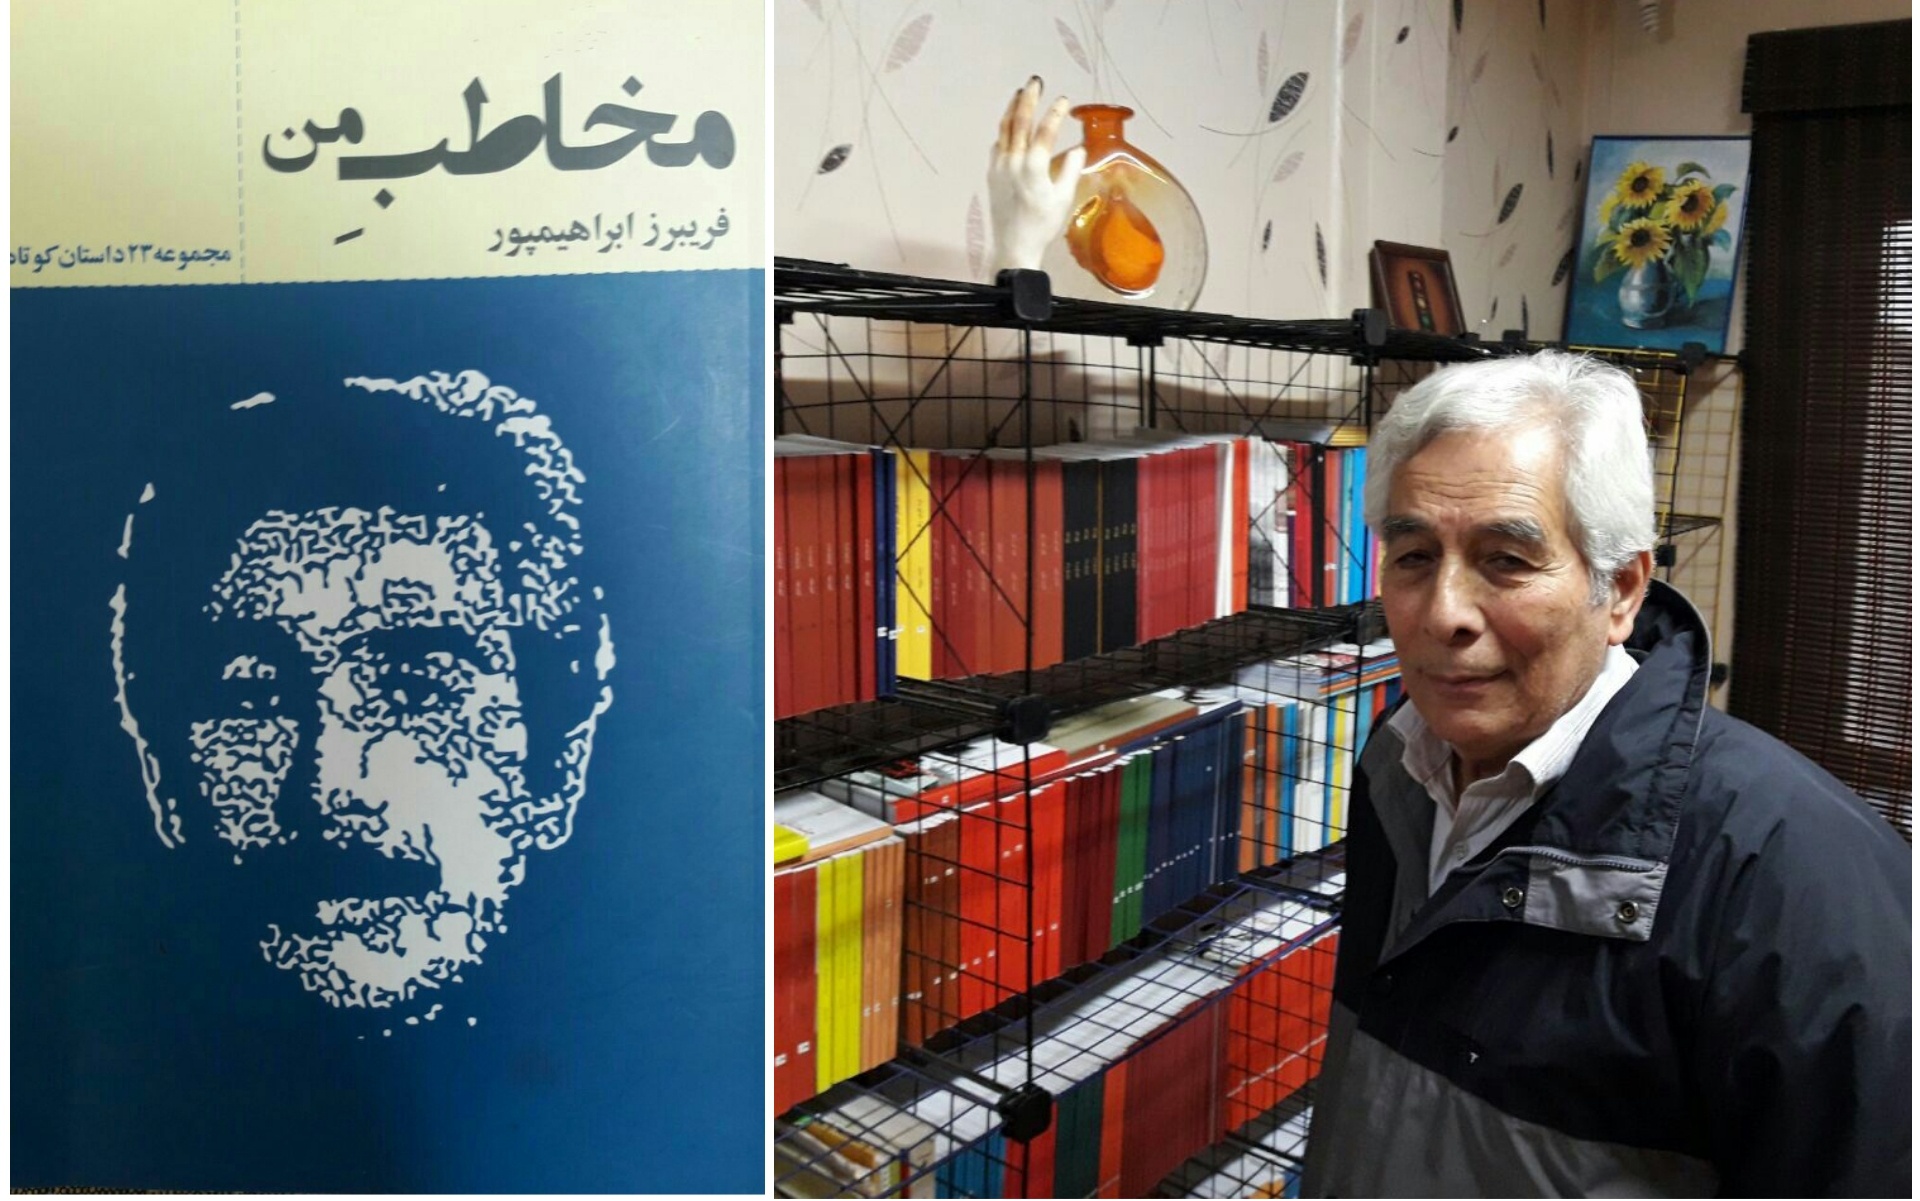 فریبرز ابراهیمپور؛ نویسنده و شاعر پیشکسوت کرمانشاهی درگذشت